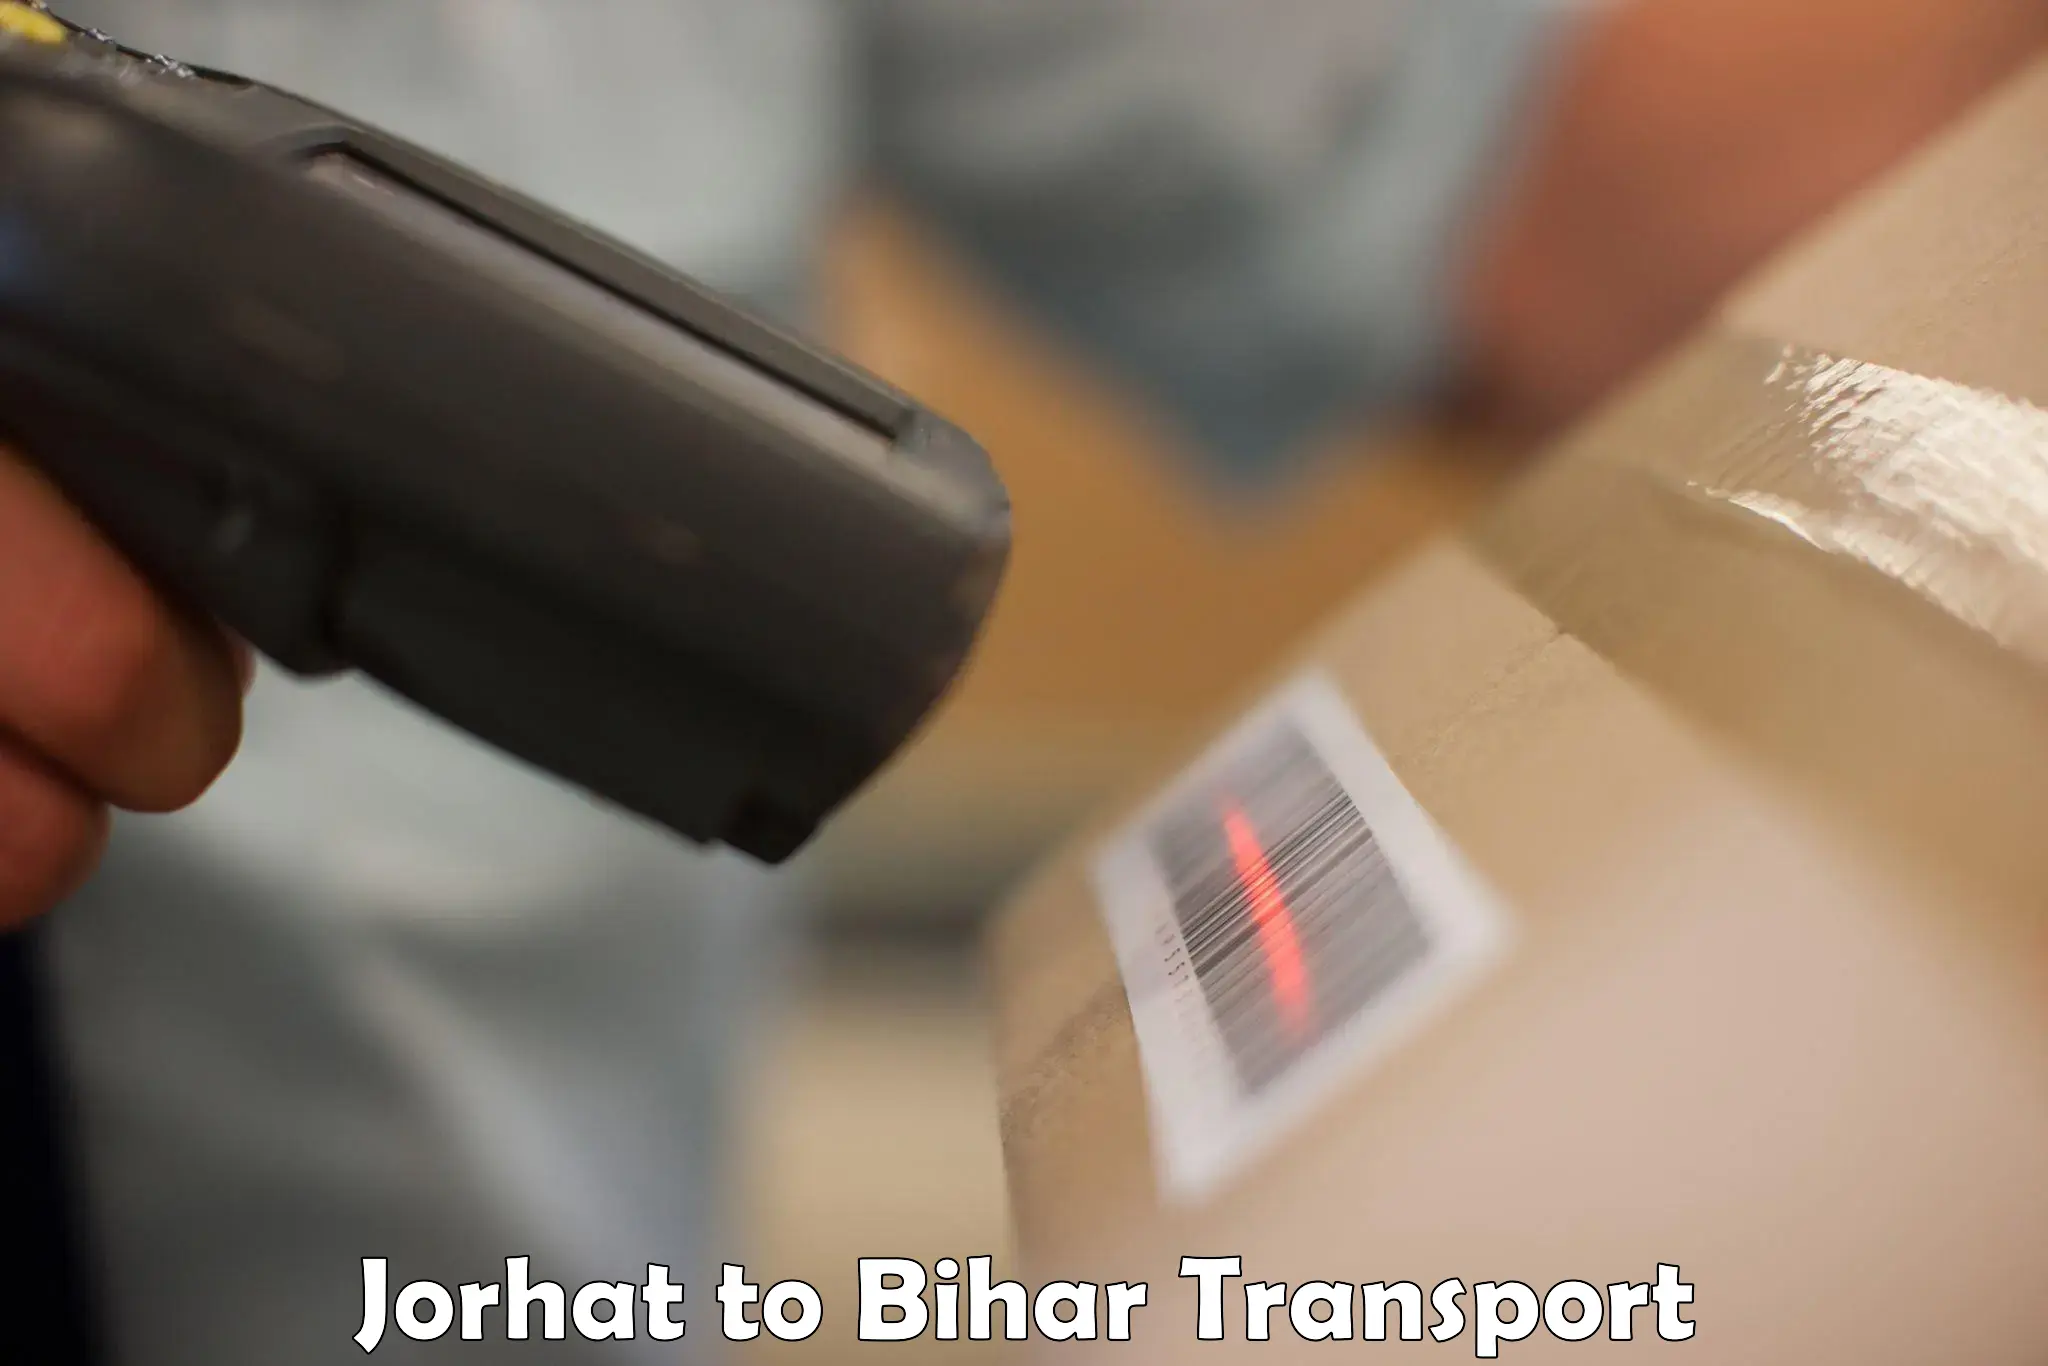 Transport in sharing Jorhat to Ekma